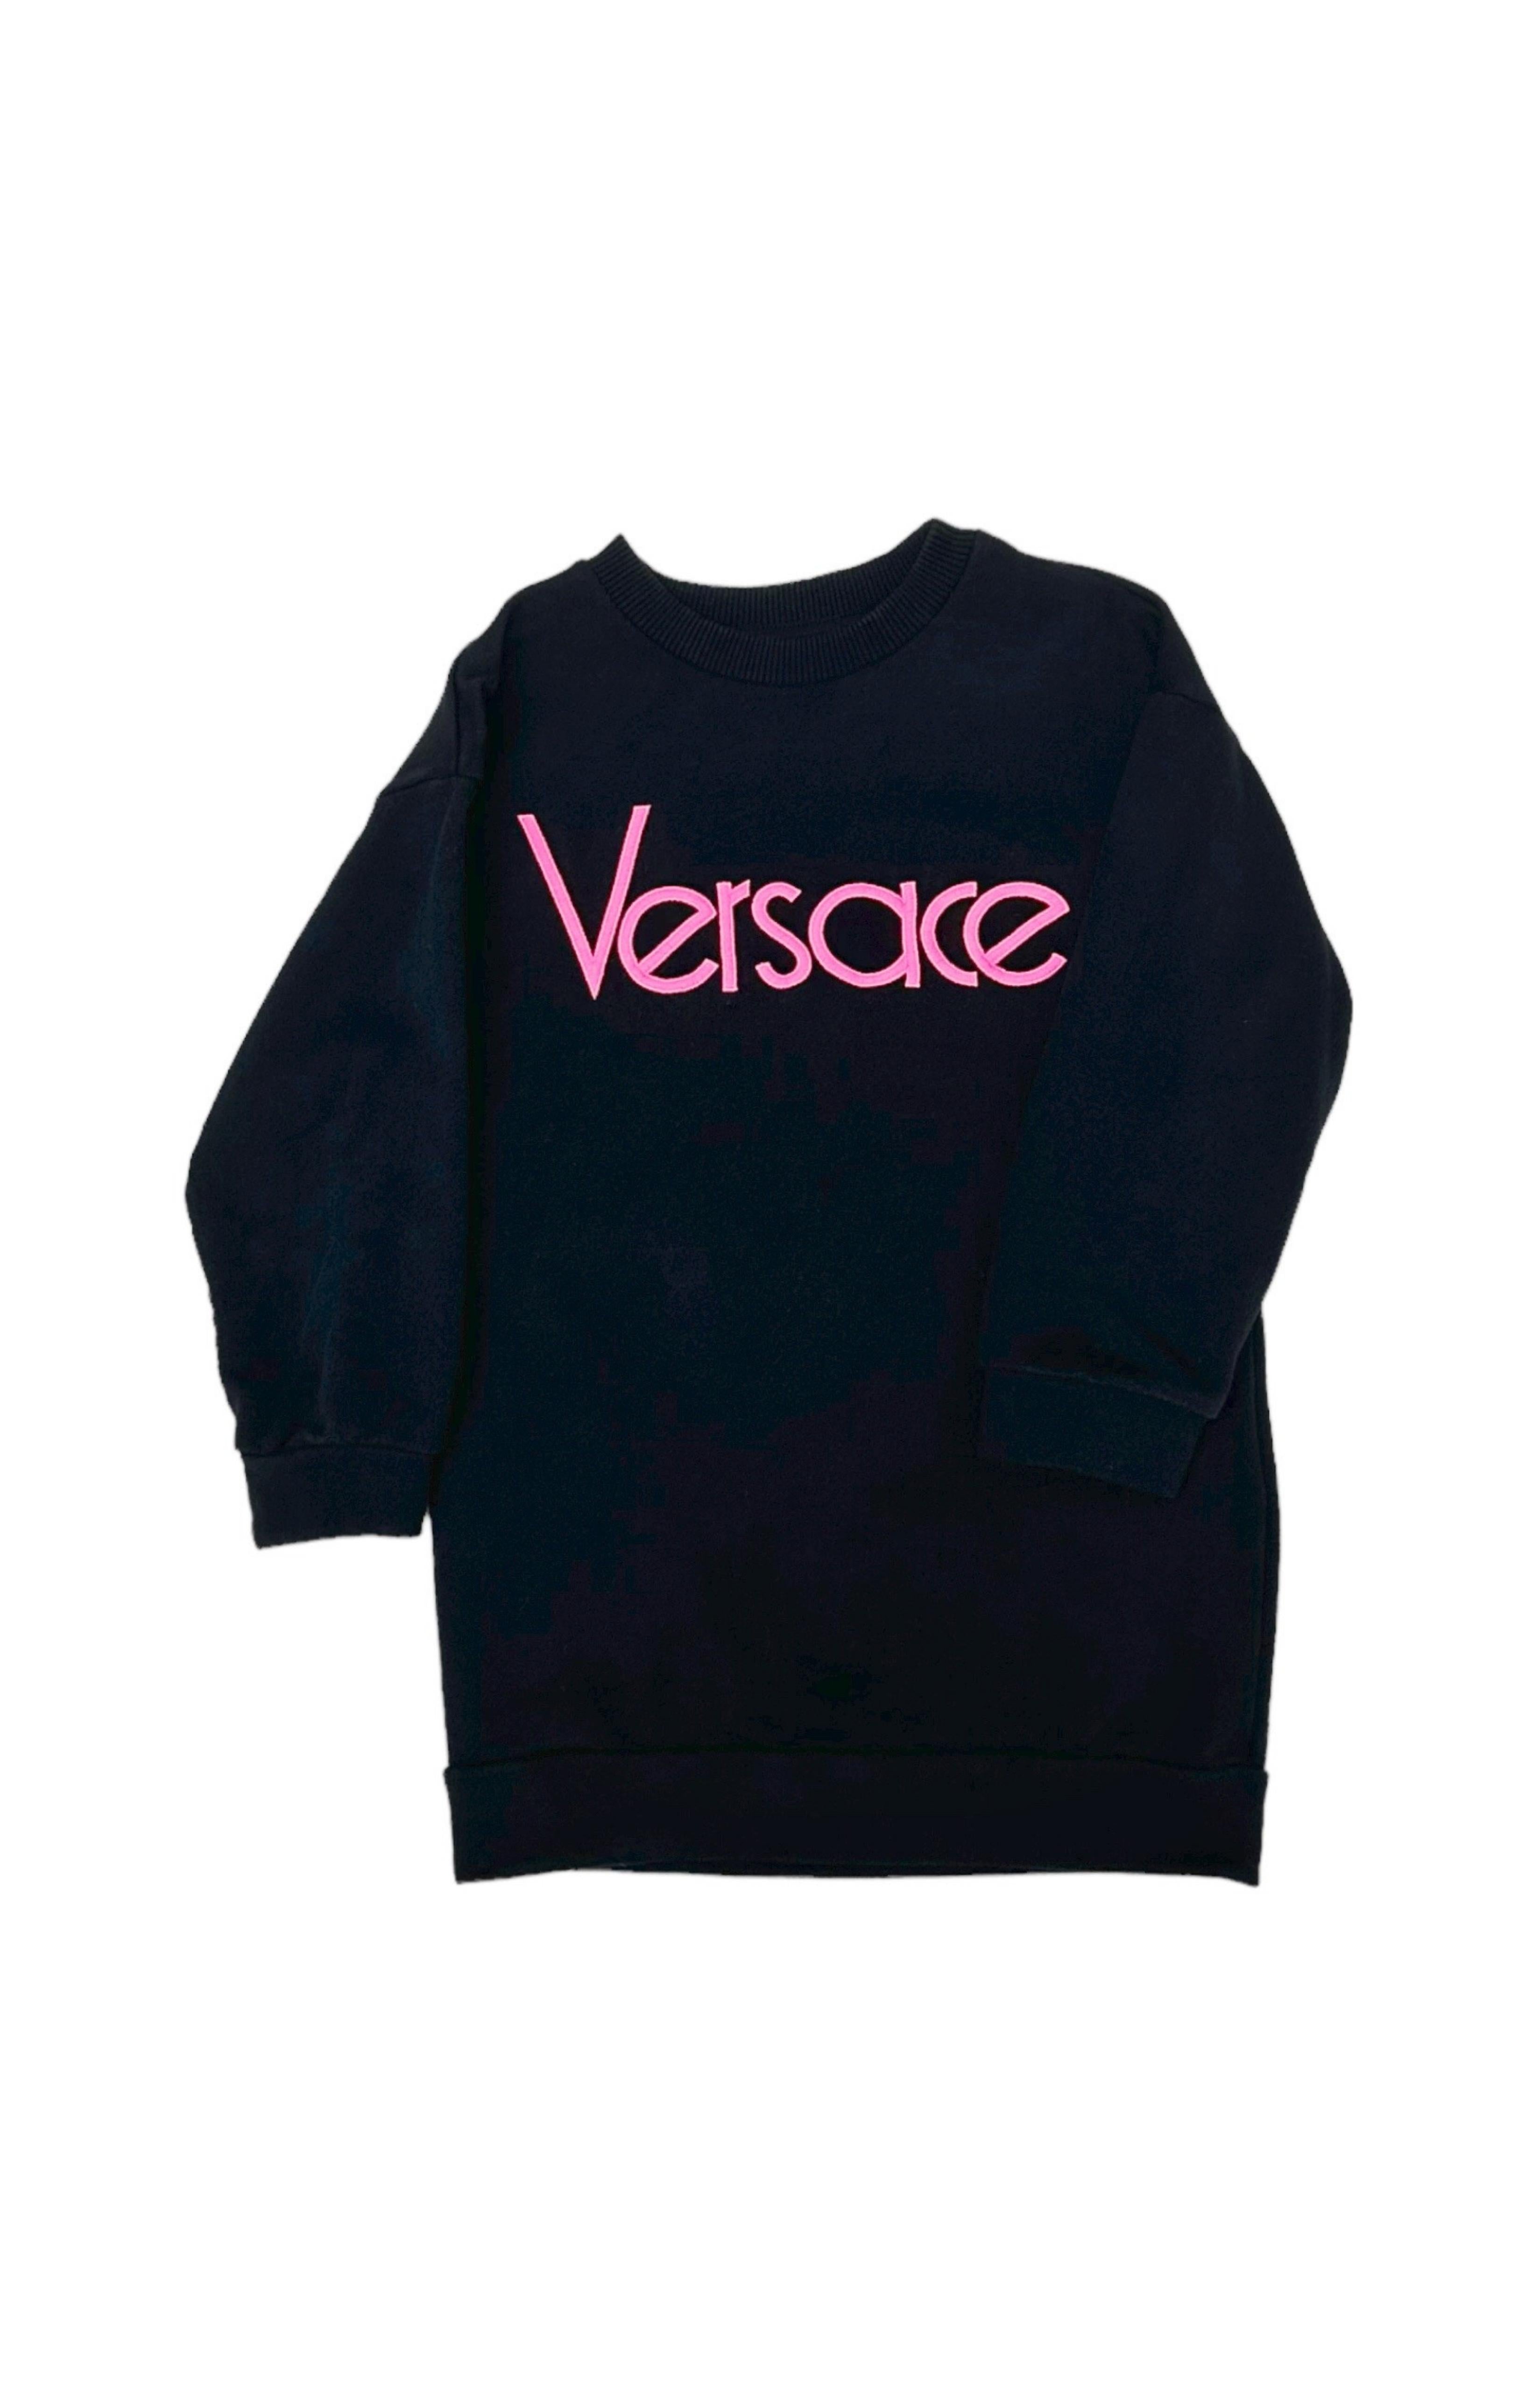 VERSACE (RARE) Sweatshirt Size: 4 Years